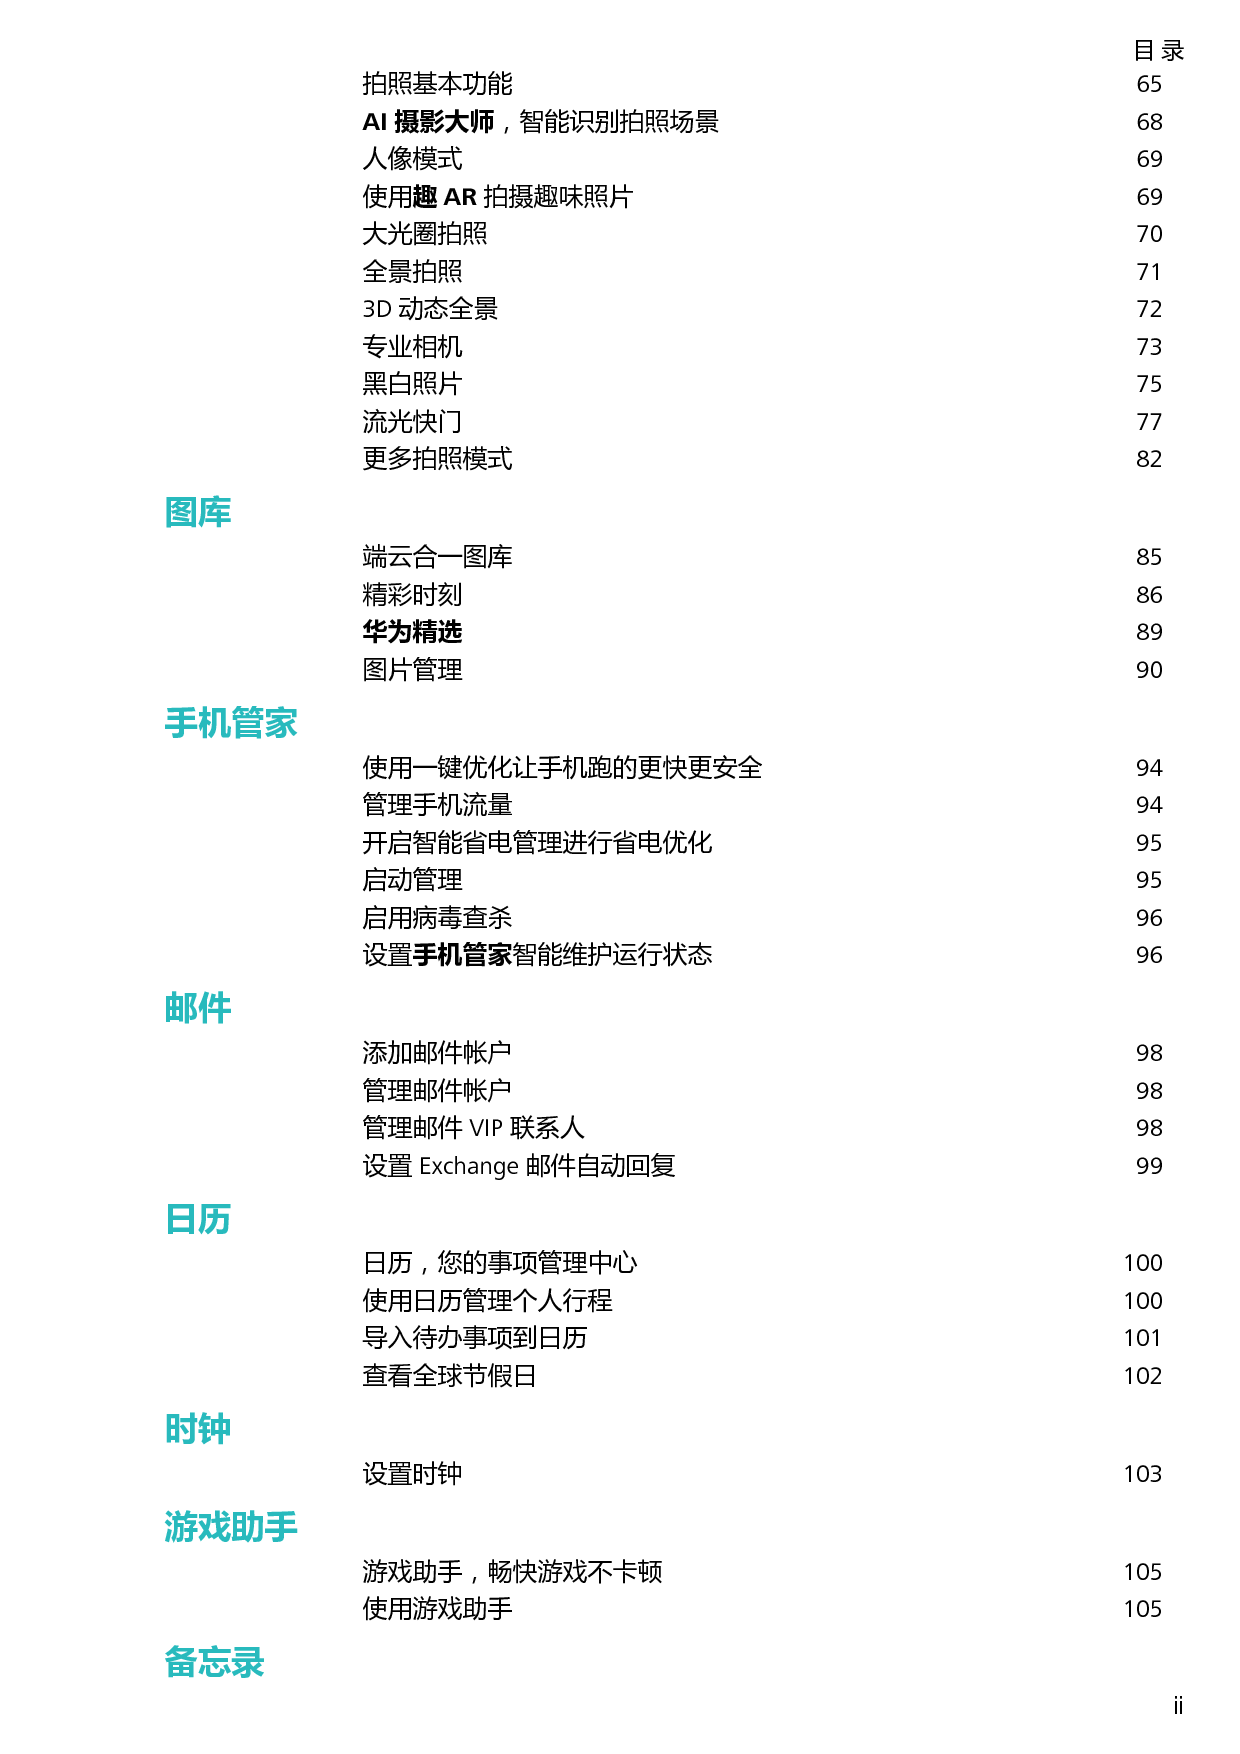 华为 Huawei NOVA 3 EMUI8.2 用户指南 第2页